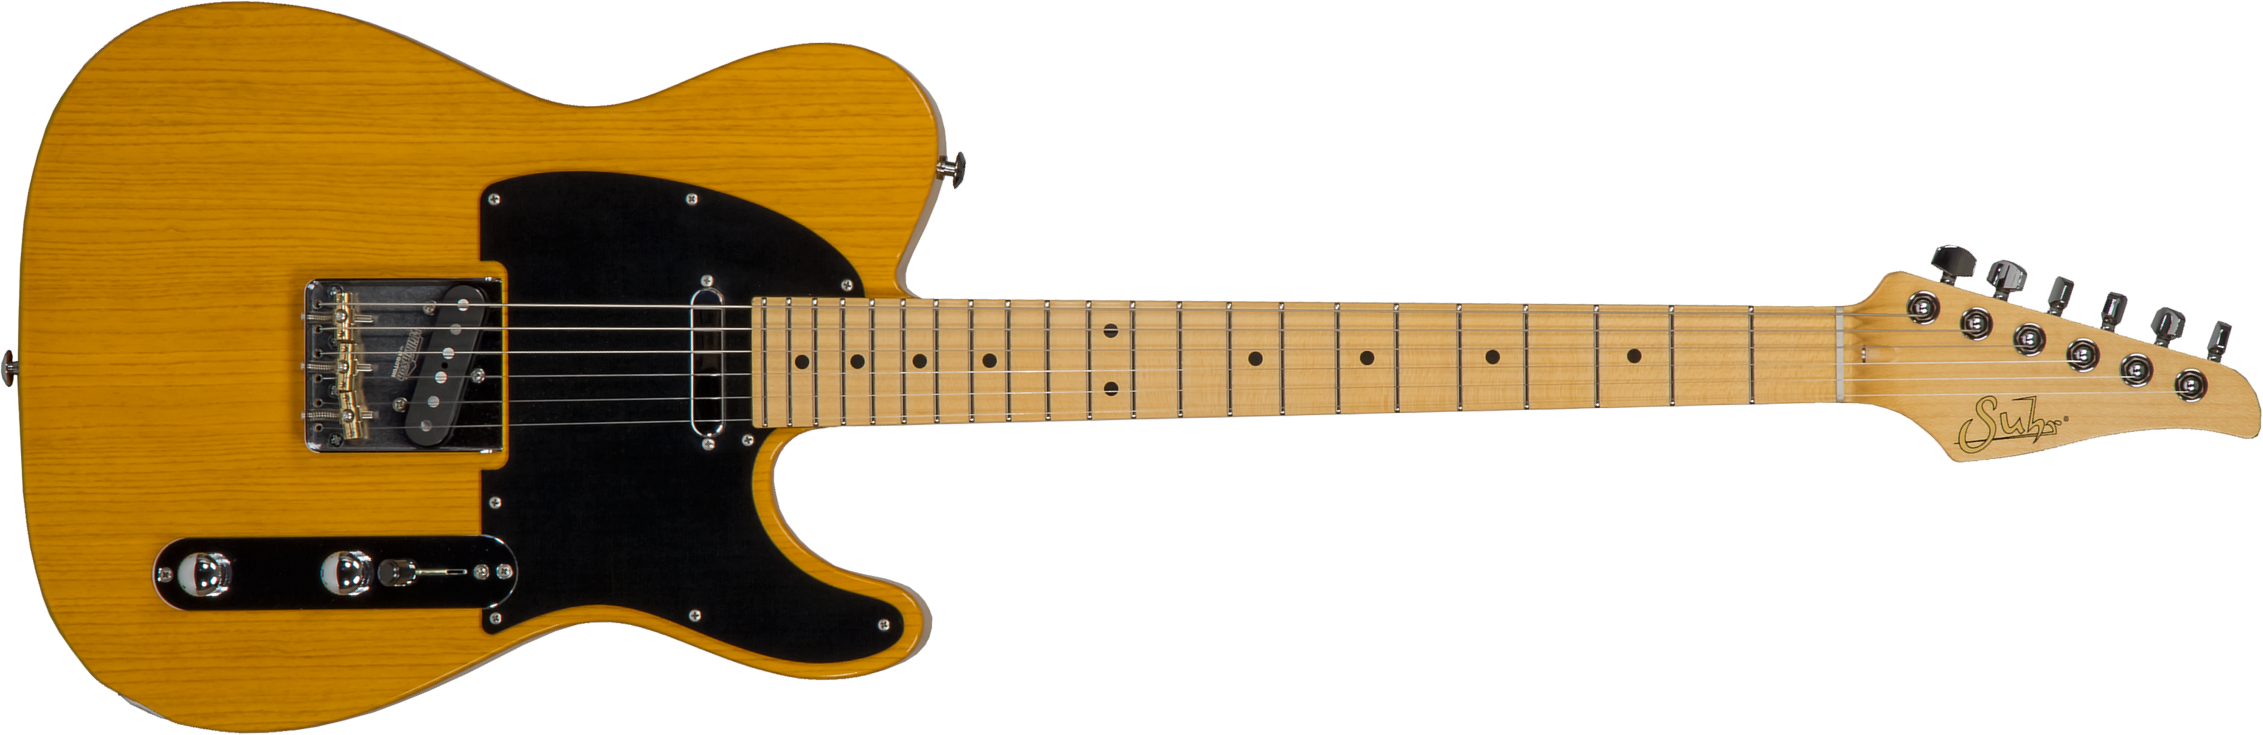 Suhr Classic T Antique 01-cta-0026 2s  Ht Mn #70402 - Light Aging Trans Butterscotch - Guitarra eléctrica con forma de tel - Main picture